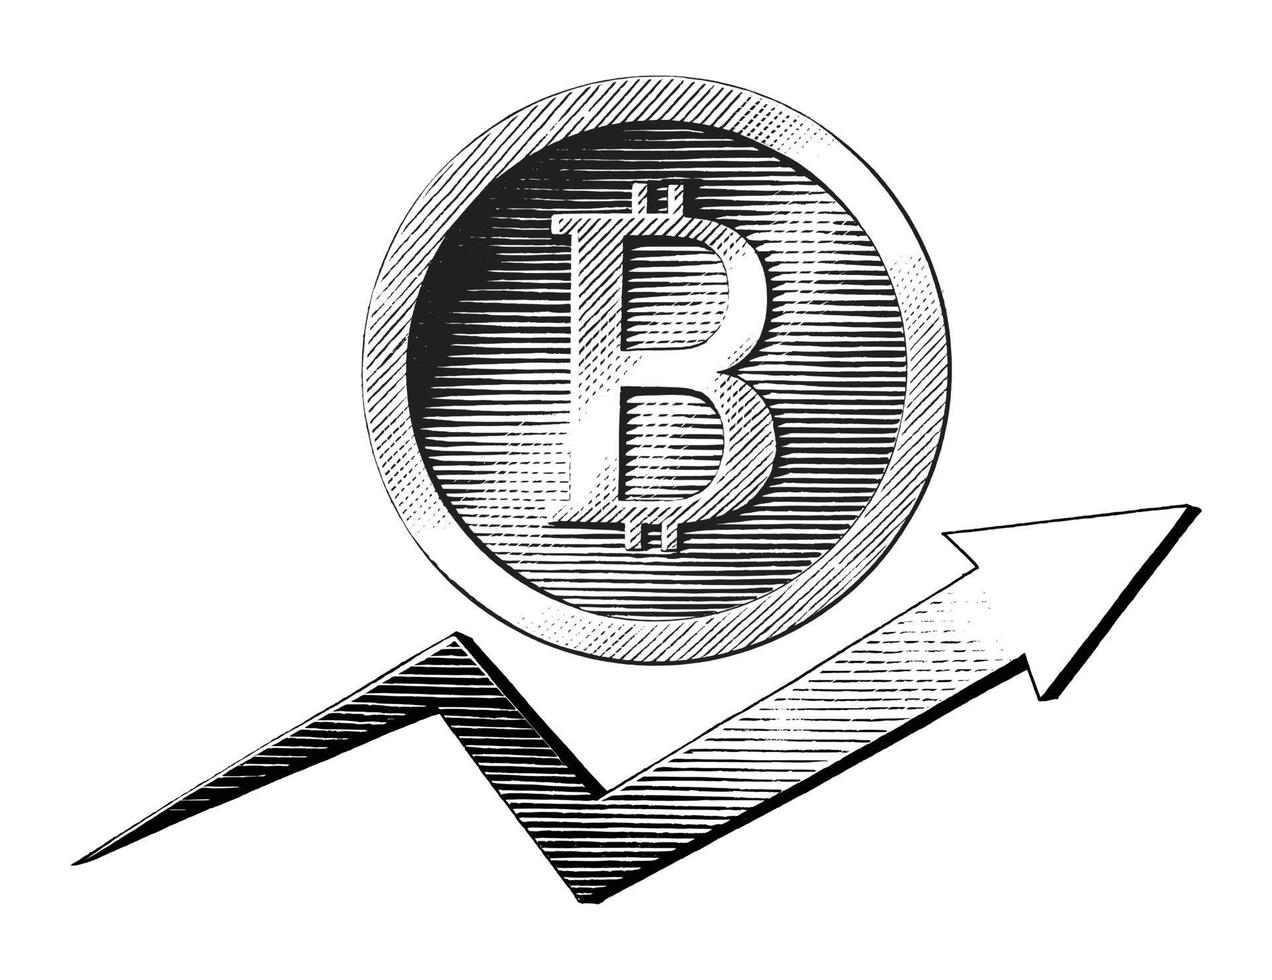 símbolo de bitcoin com mão de trand desenhar estilo de gravura vintage vetor